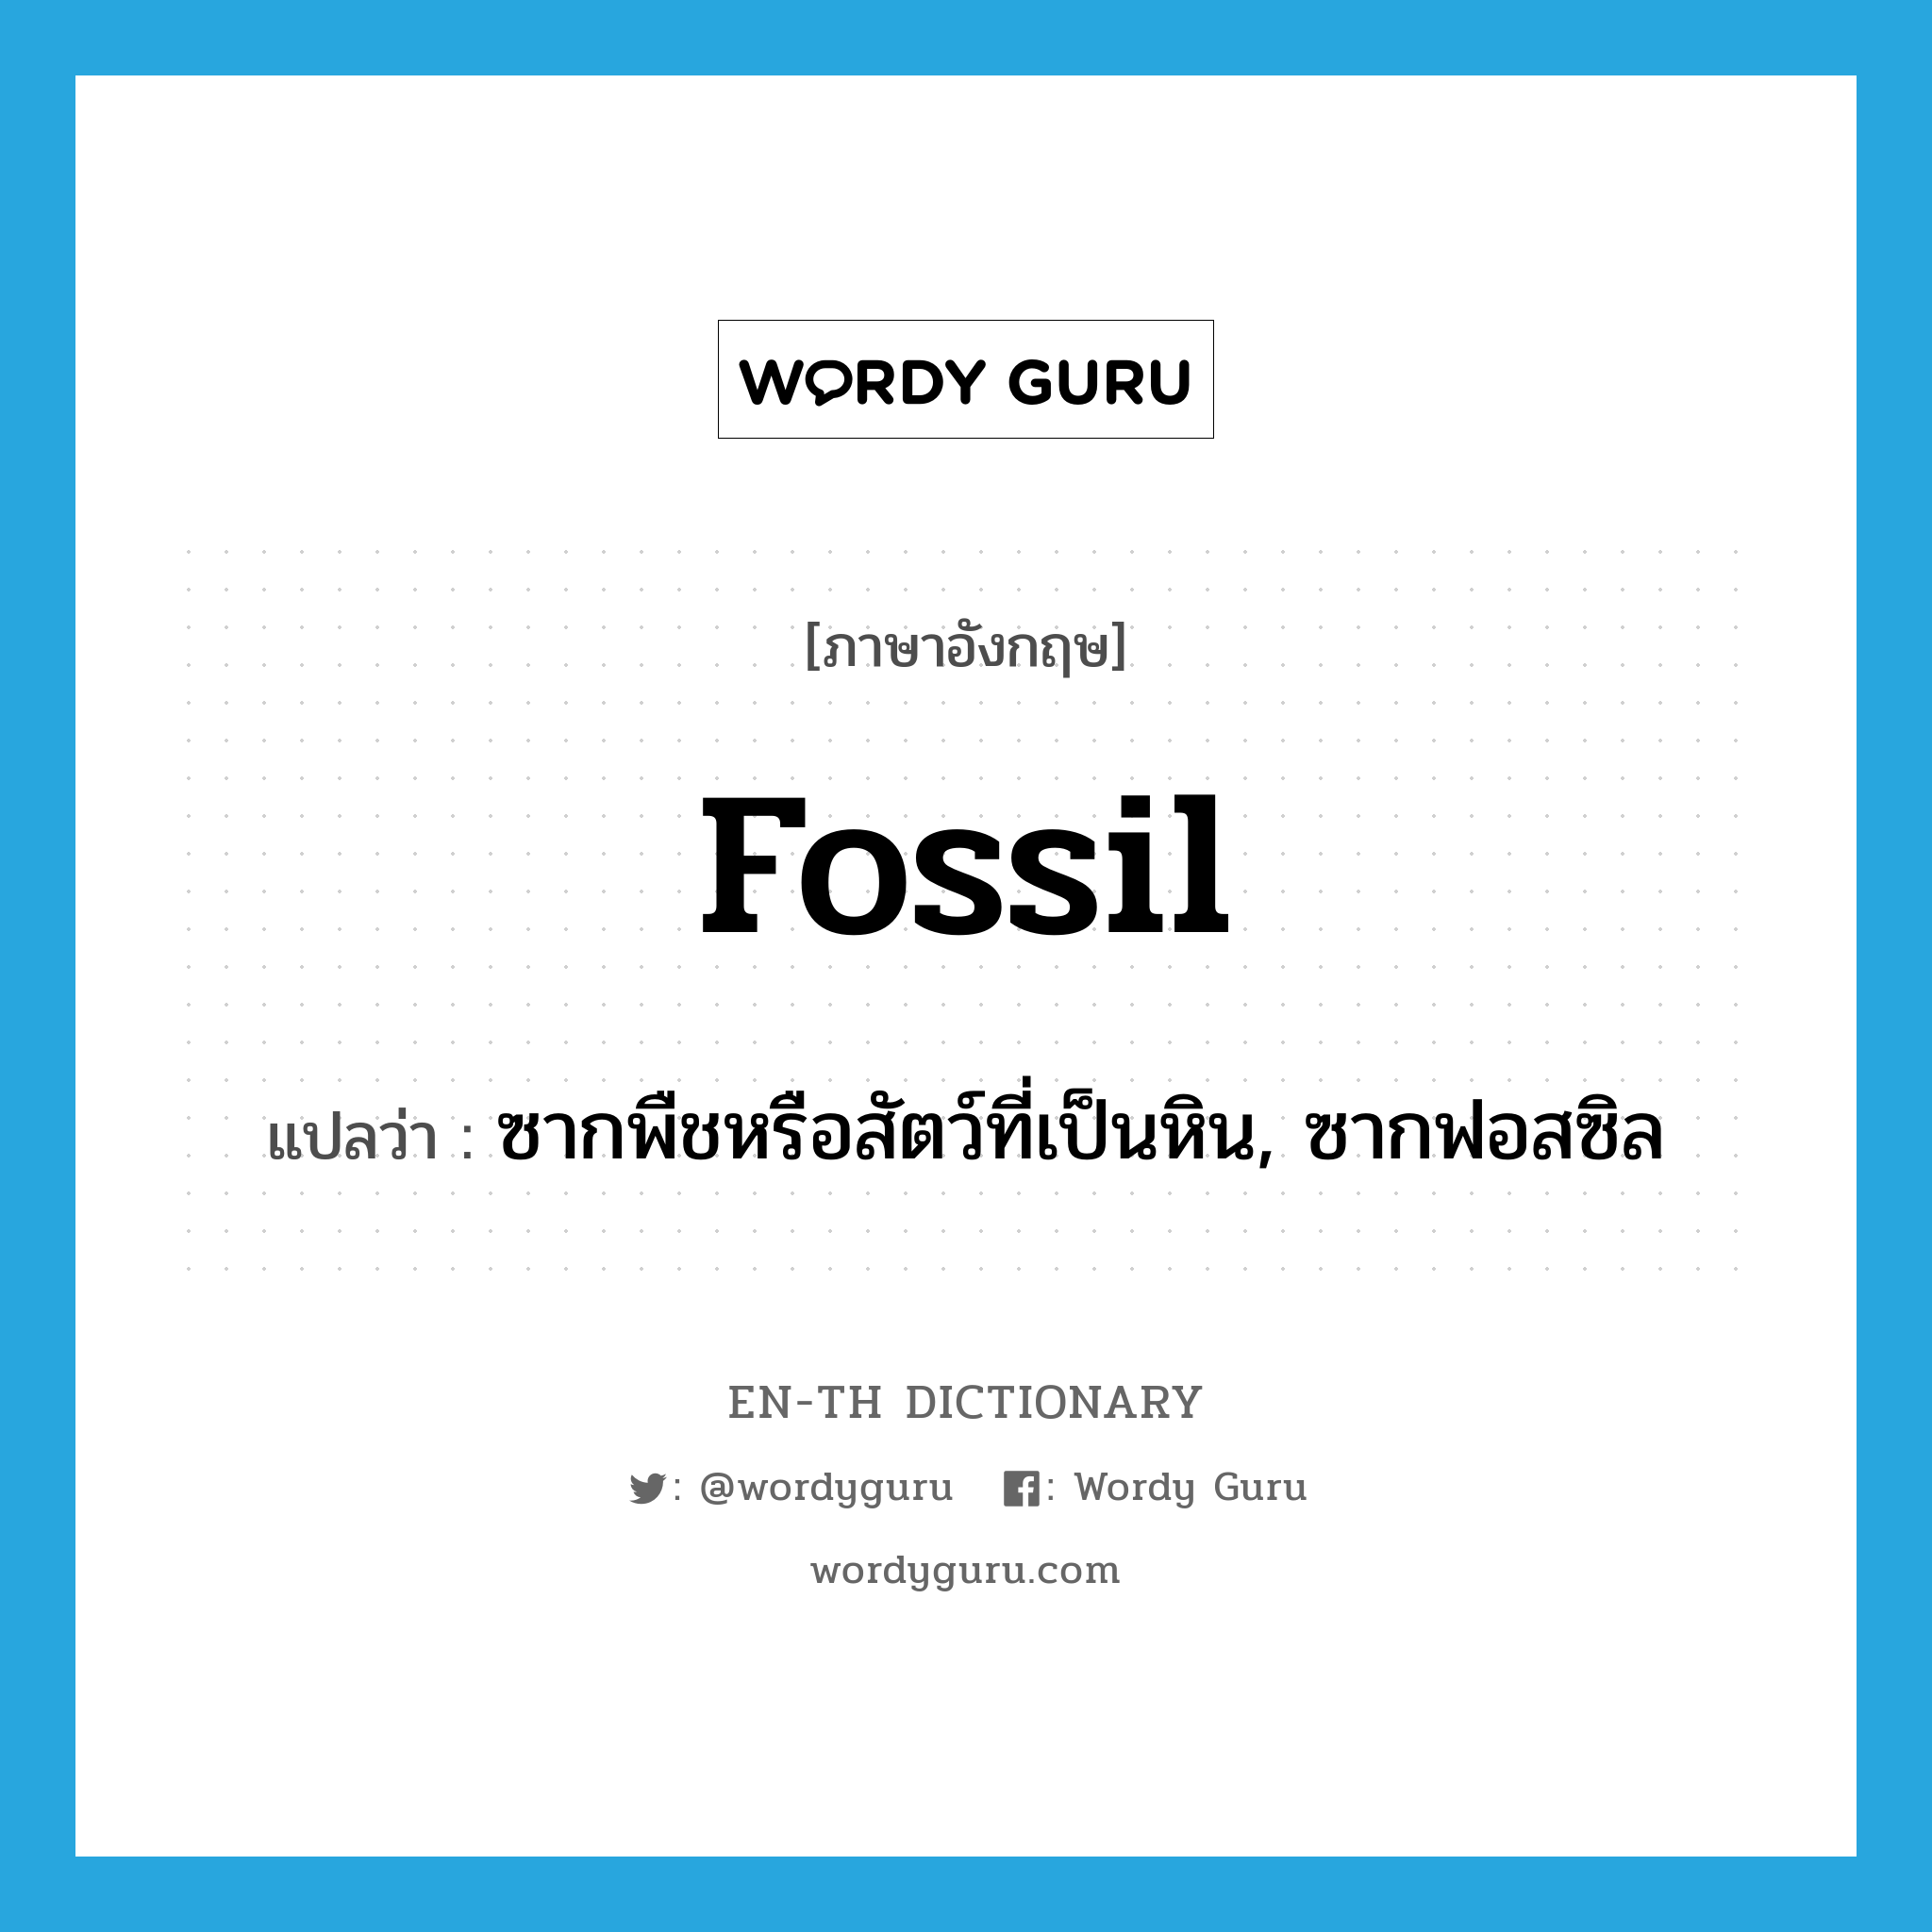 fossil แปลว่า?, คำศัพท์ภาษาอังกฤษ fossil แปลว่า ซากพืชหรือสัตว์ที่เป็นหิน, ซากฟอสซิล ประเภท N หมวด N